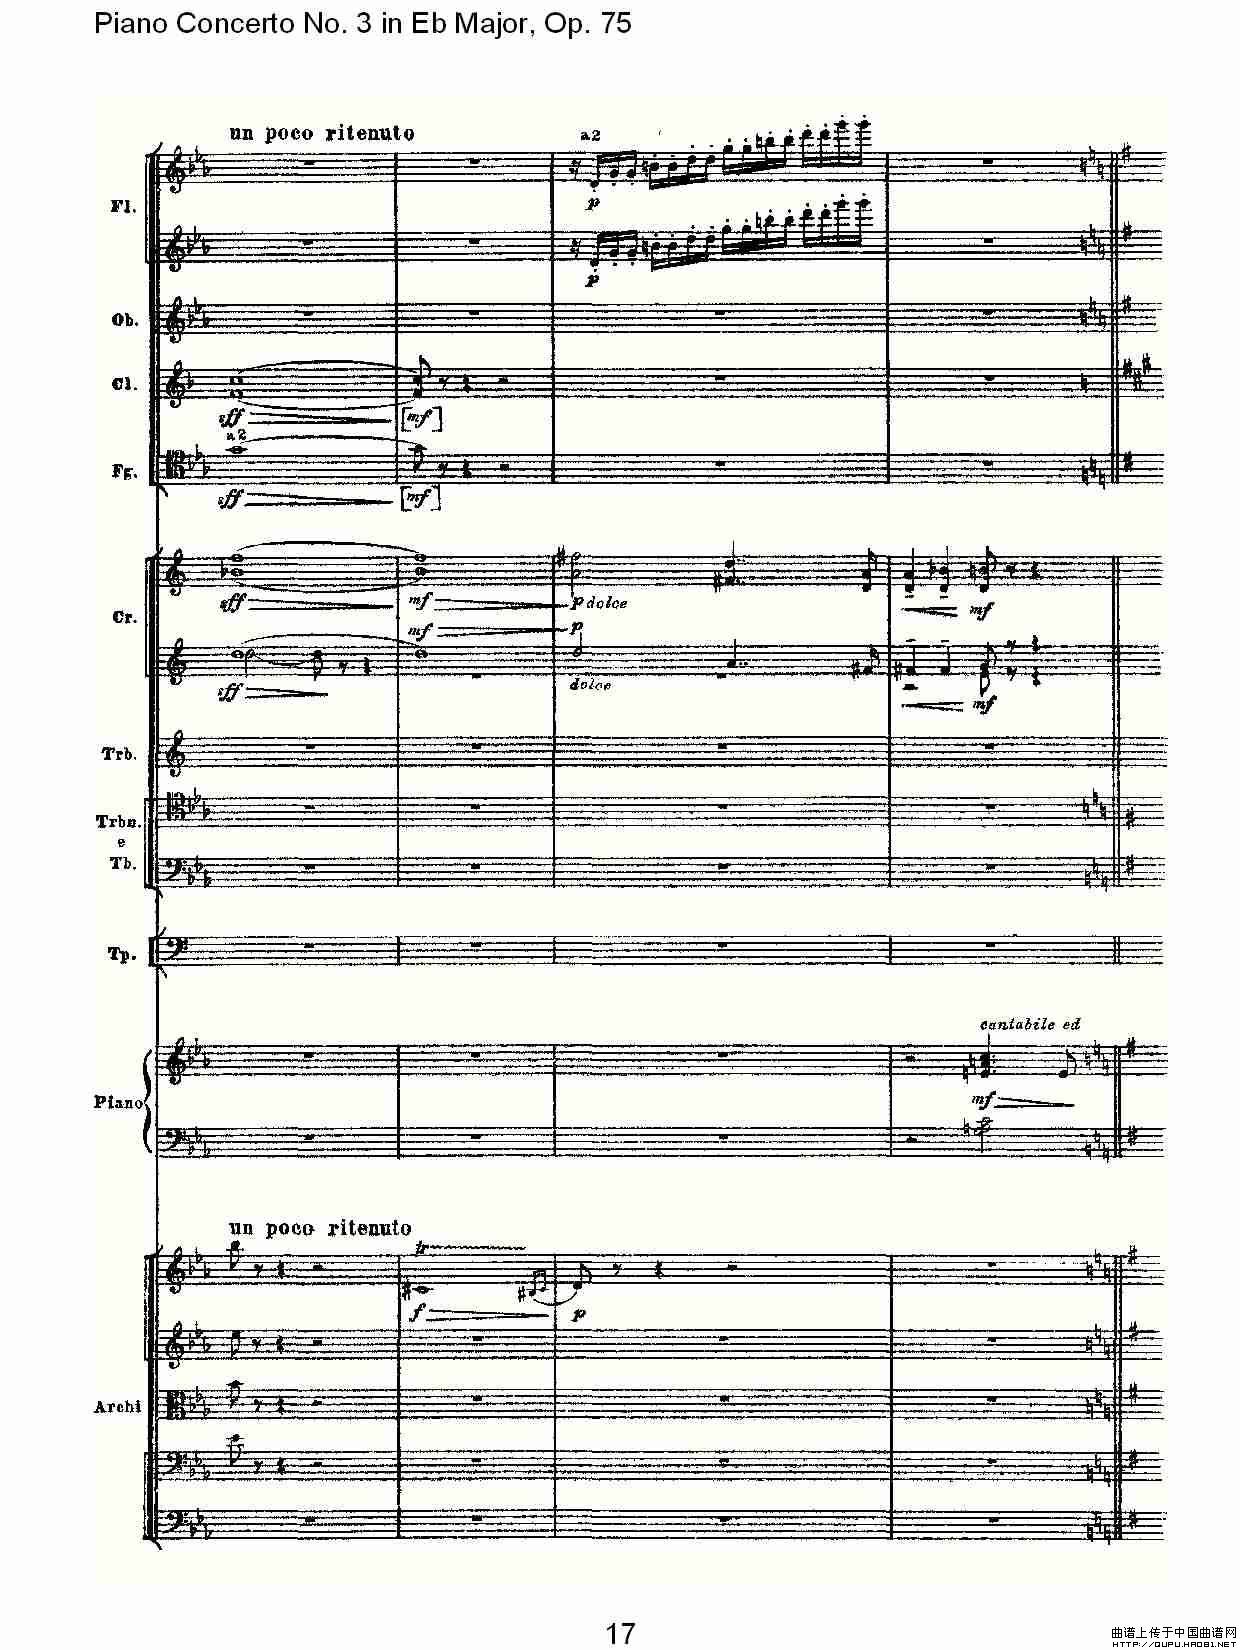 Piano Concerto No.3 in Eb Major,Op.75（Eb大调第三钢琴协奏曲）(1)_原文件名：Piano Concerto No.3 in Eb Major,Op.7517.jpg